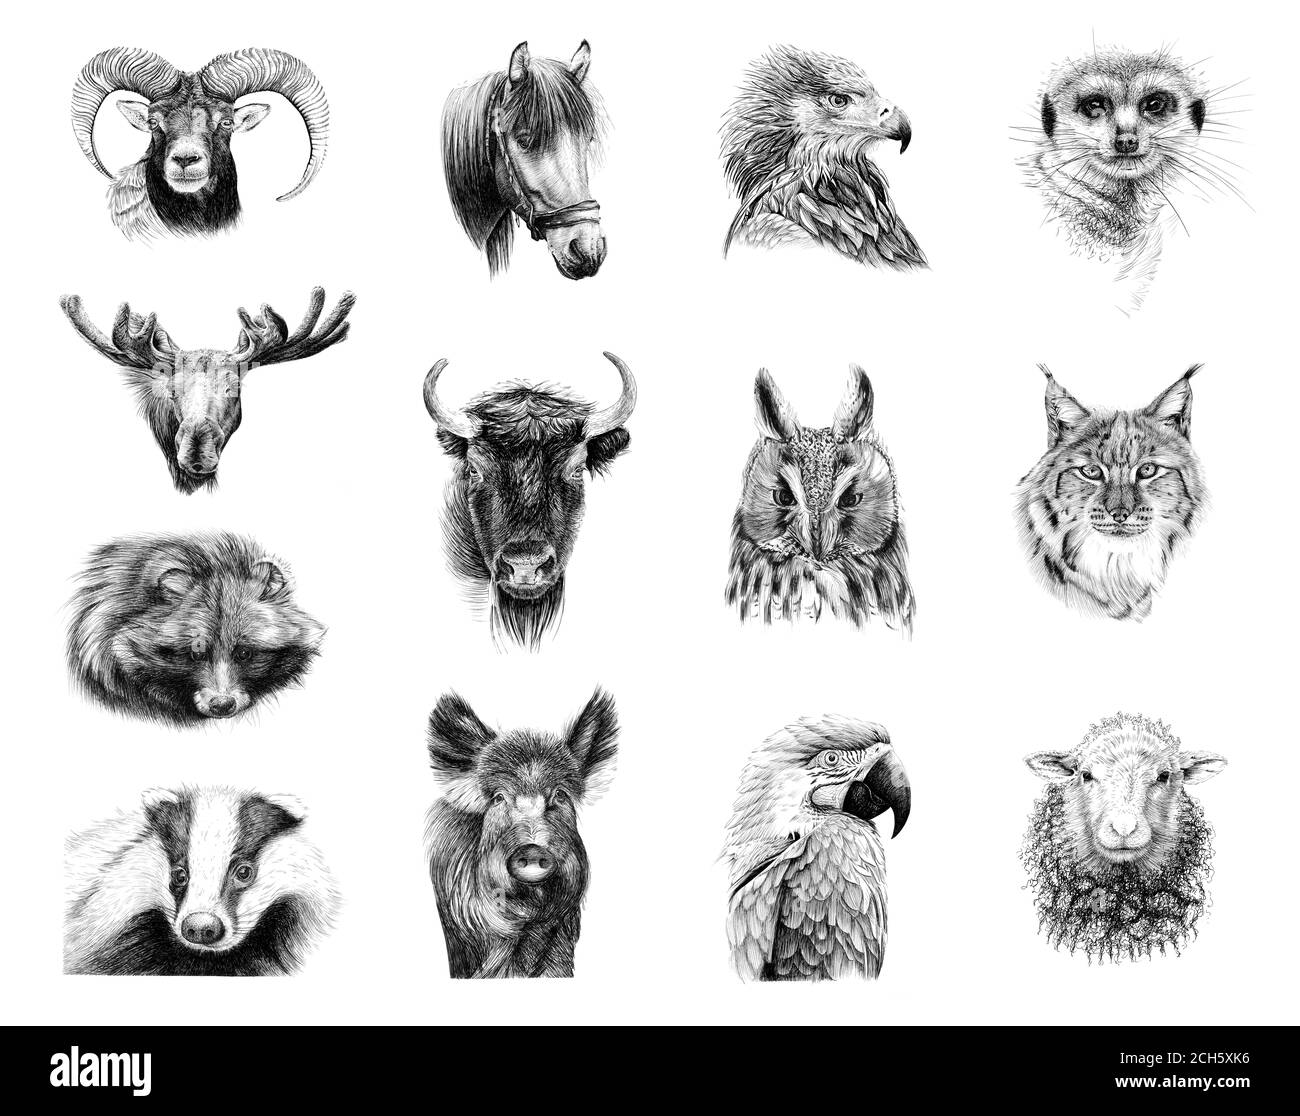 Handgezeichnete Porträts von dreizehn Tieren, Skizzengrafiken monochrome Illustration auf weißem Hintergrund (Originale, keine Zeichnung) Stockfoto